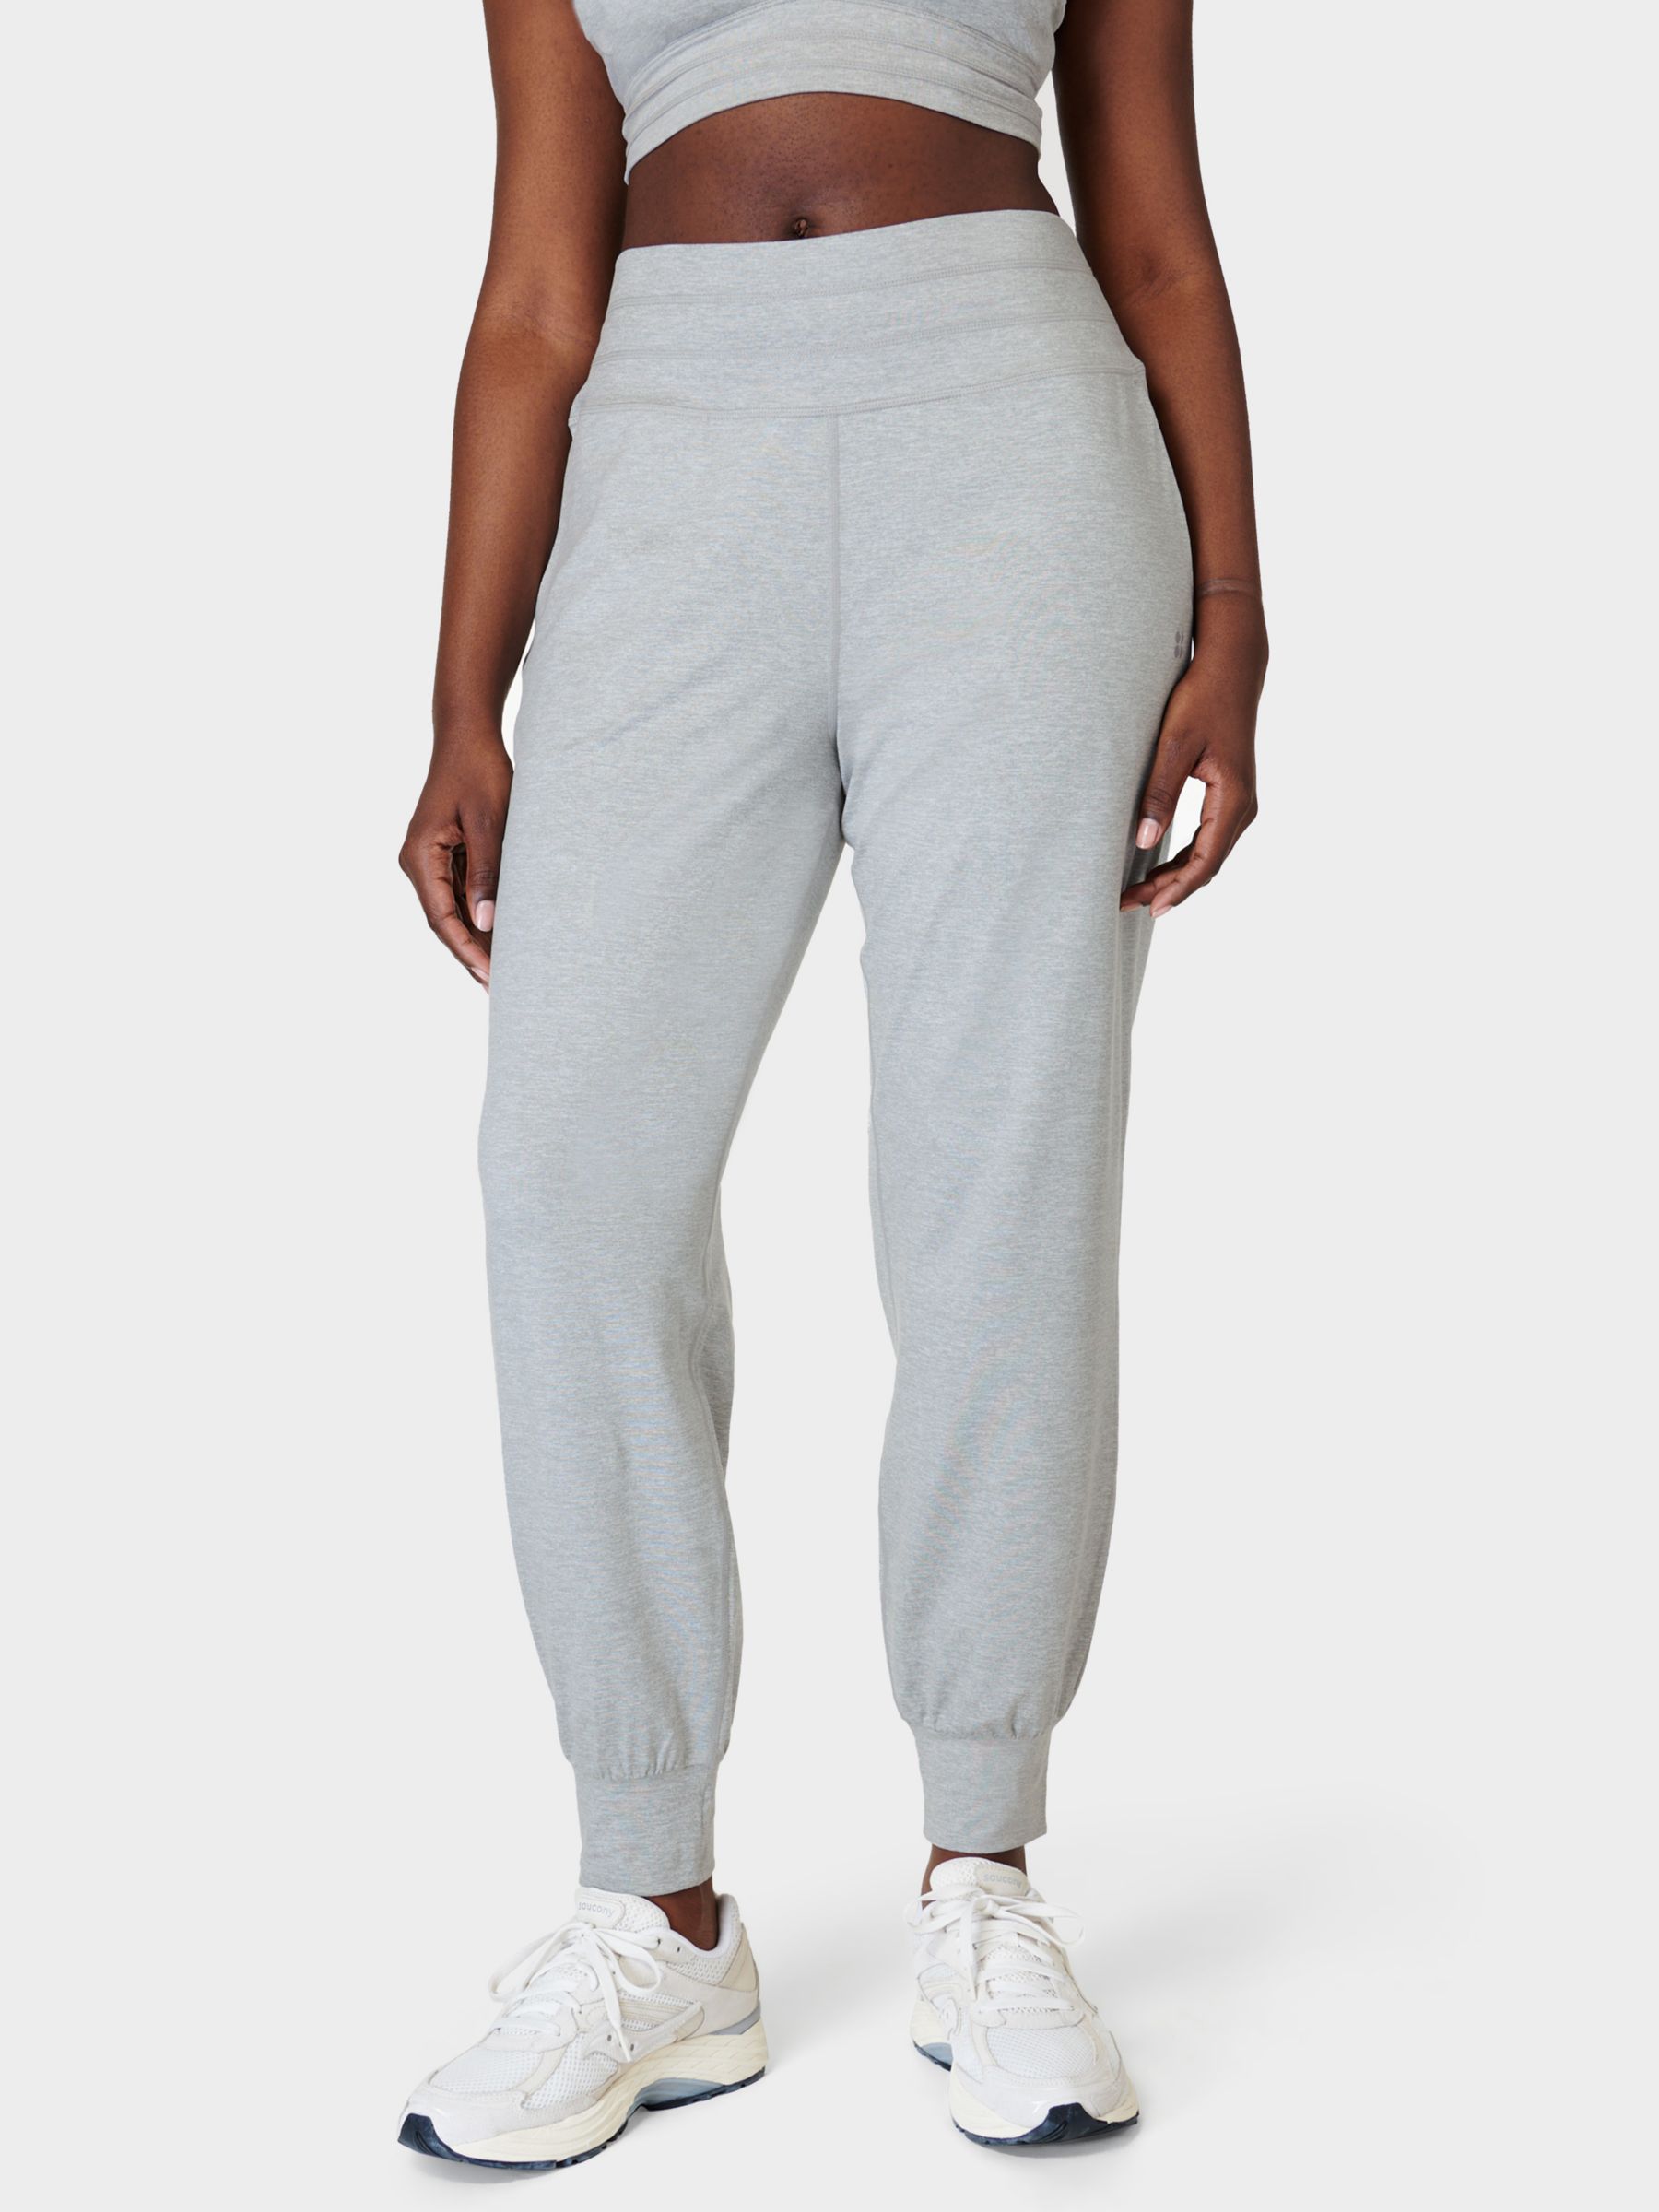 Women's Trousers & Leggings - Sweaty Betty, Grey